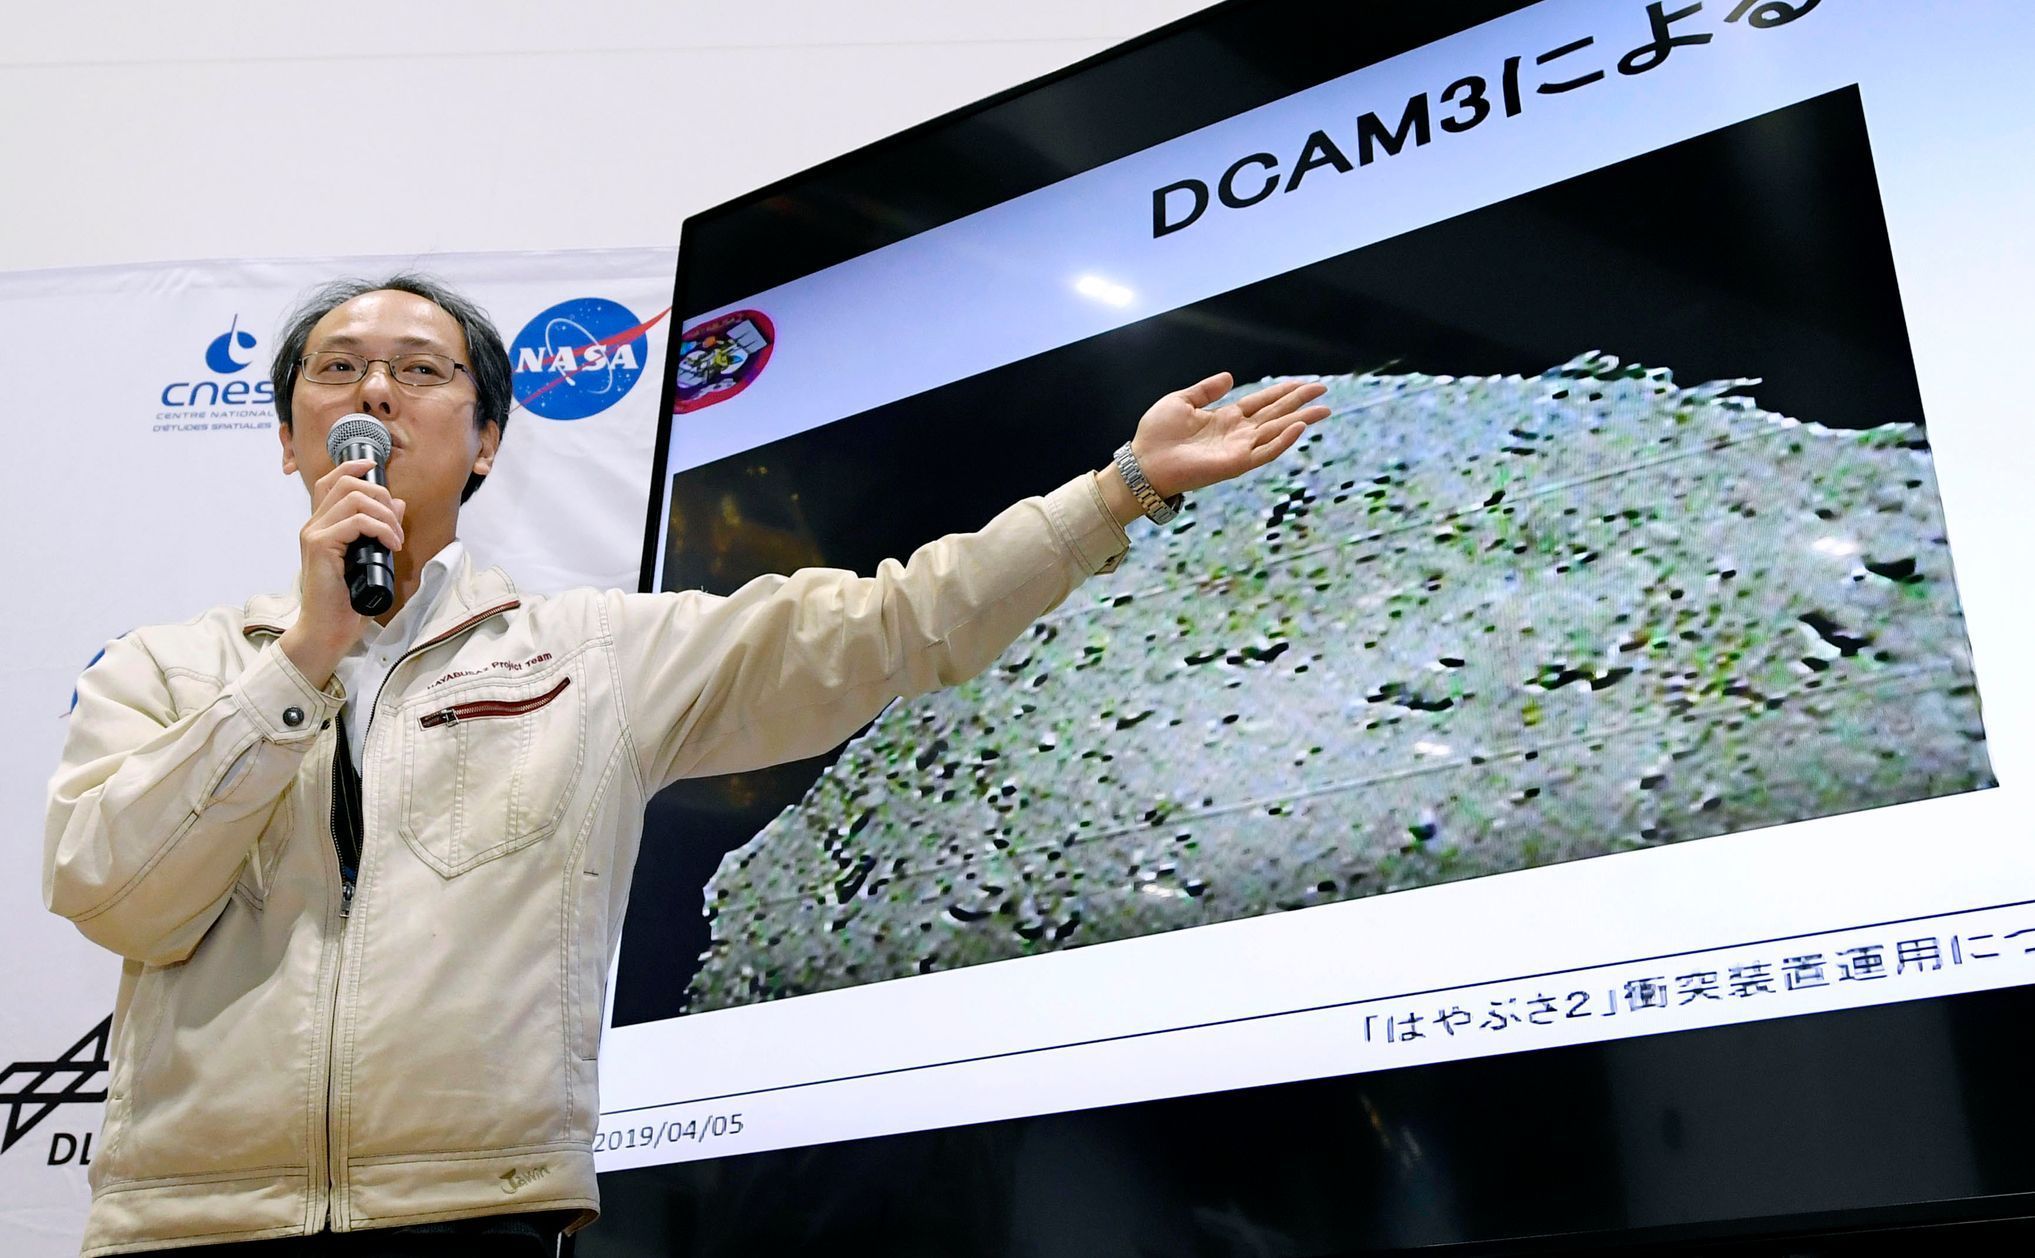 Tisková konference japonské agentury JAXA k tomu, že její sonda vytvořila kráter na asteroidu Ryugu.